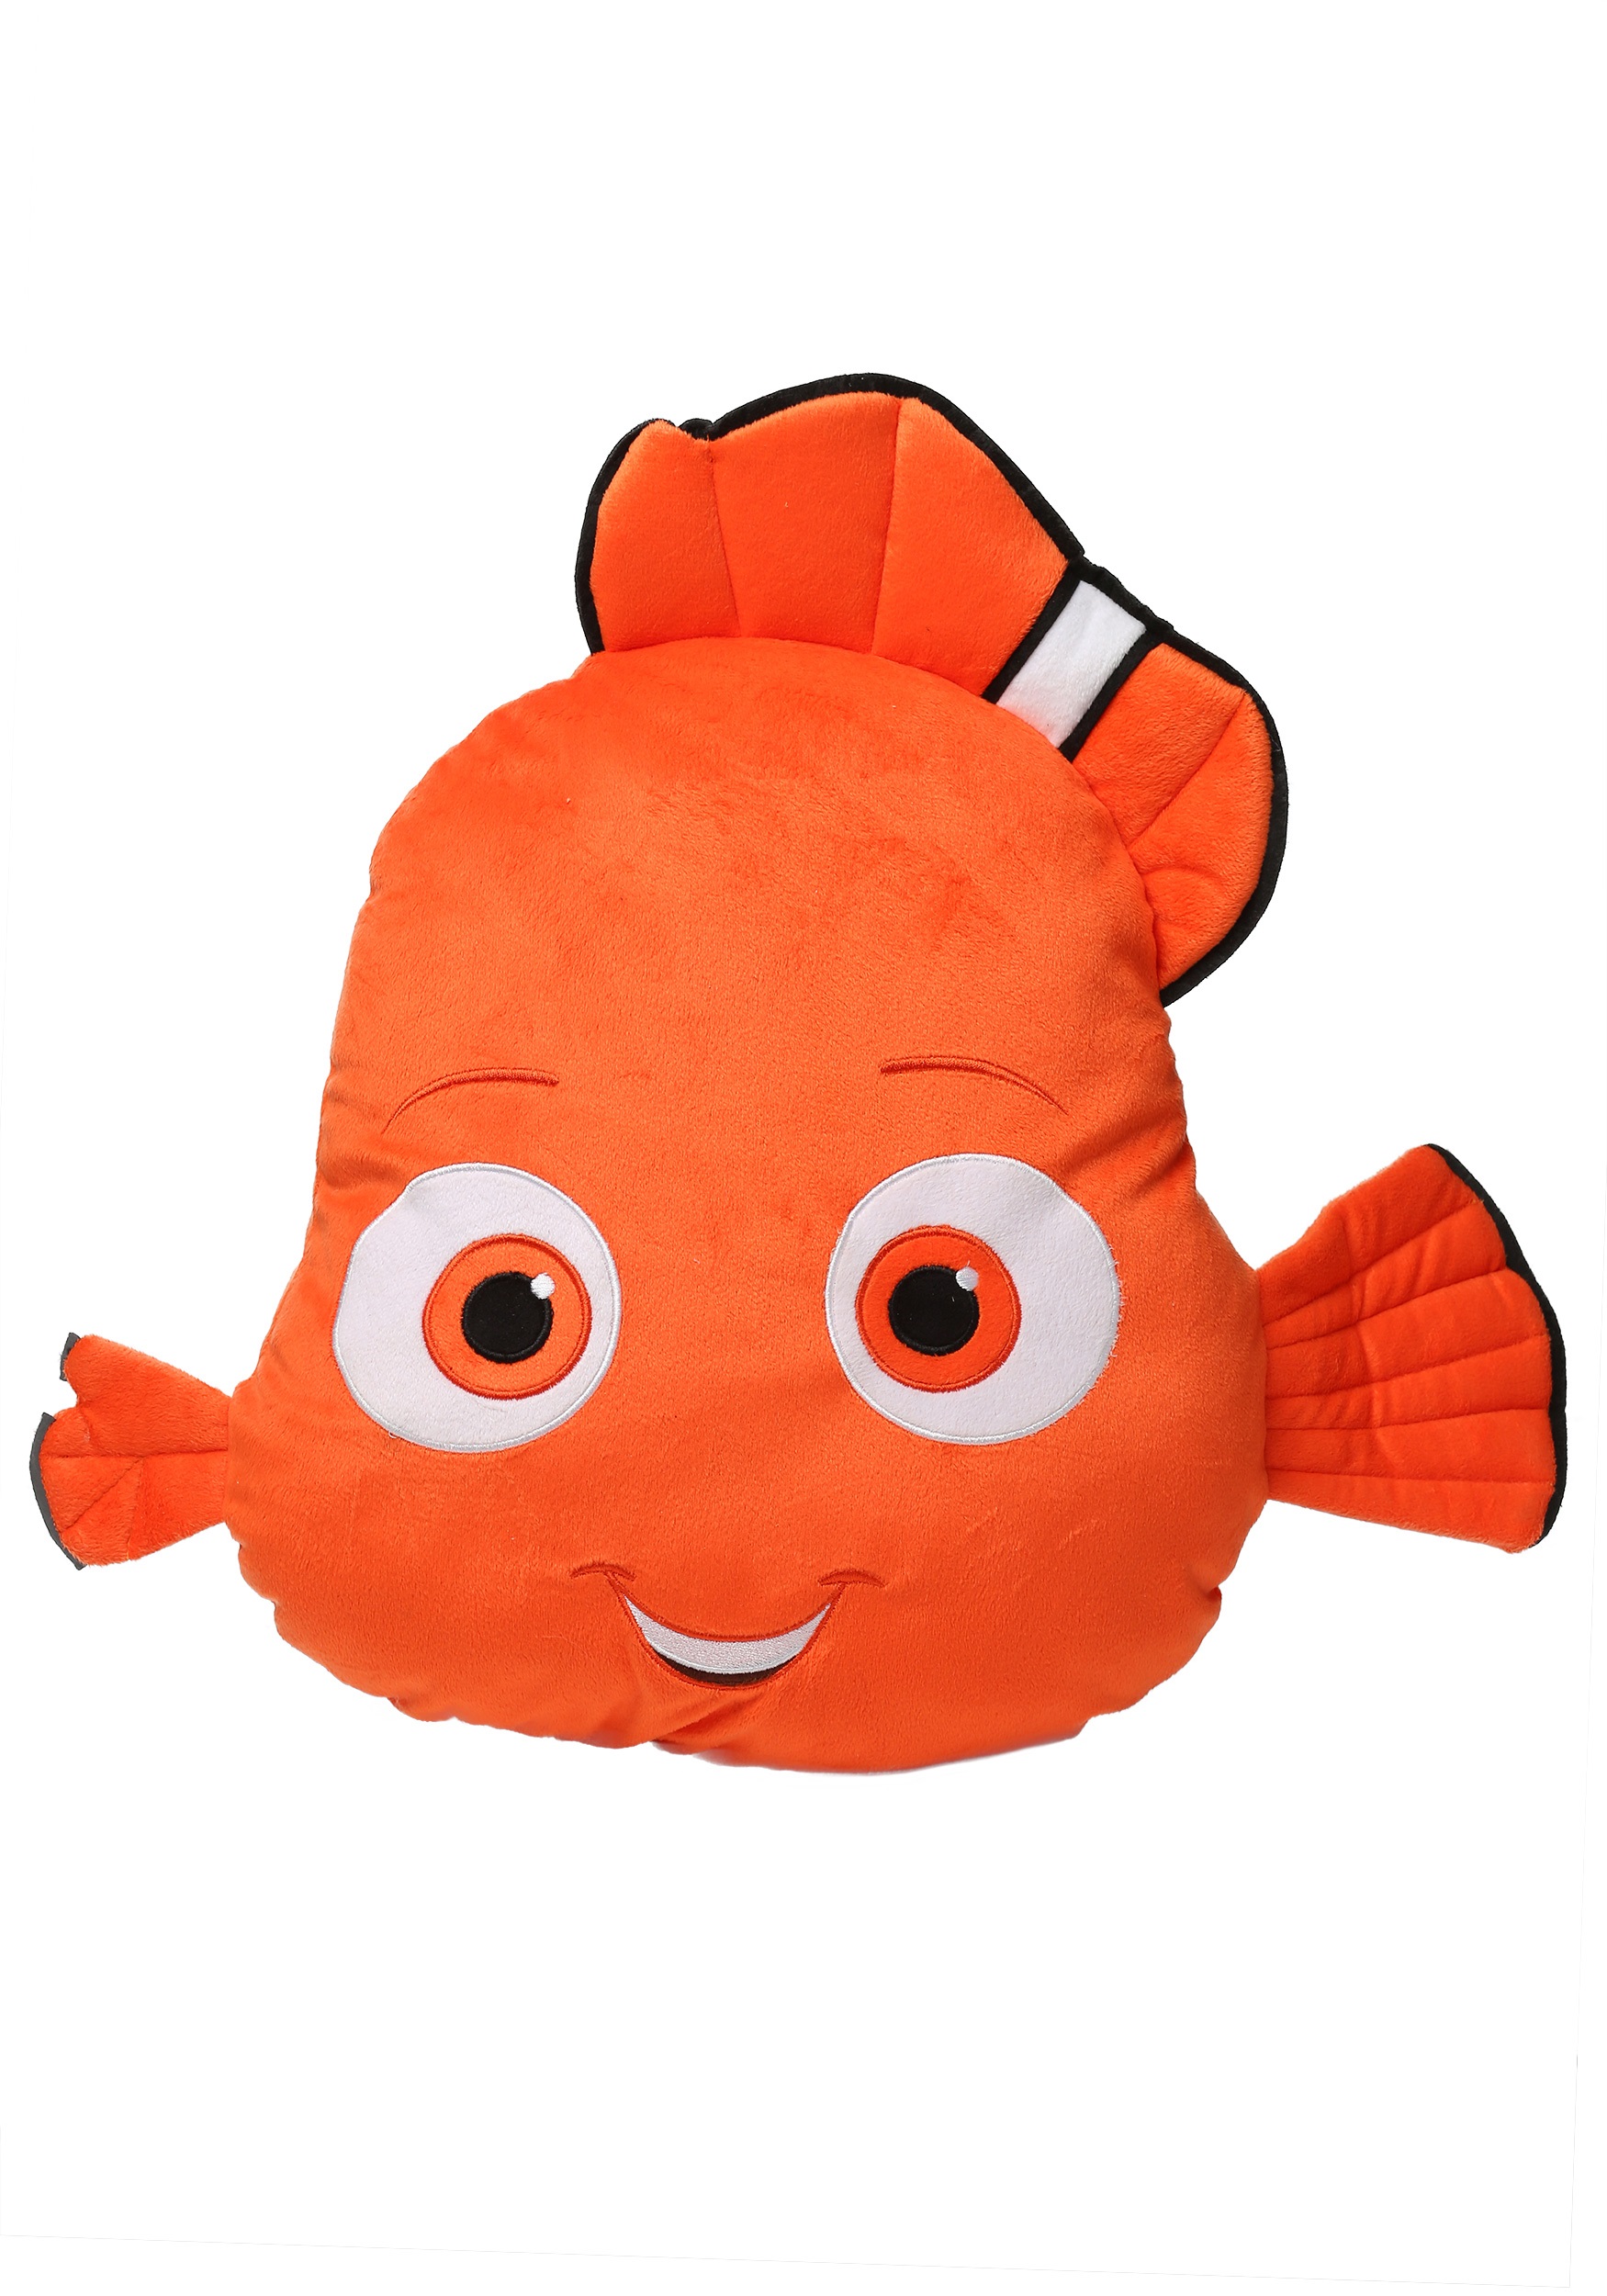 Finding Nemo Face Pillow